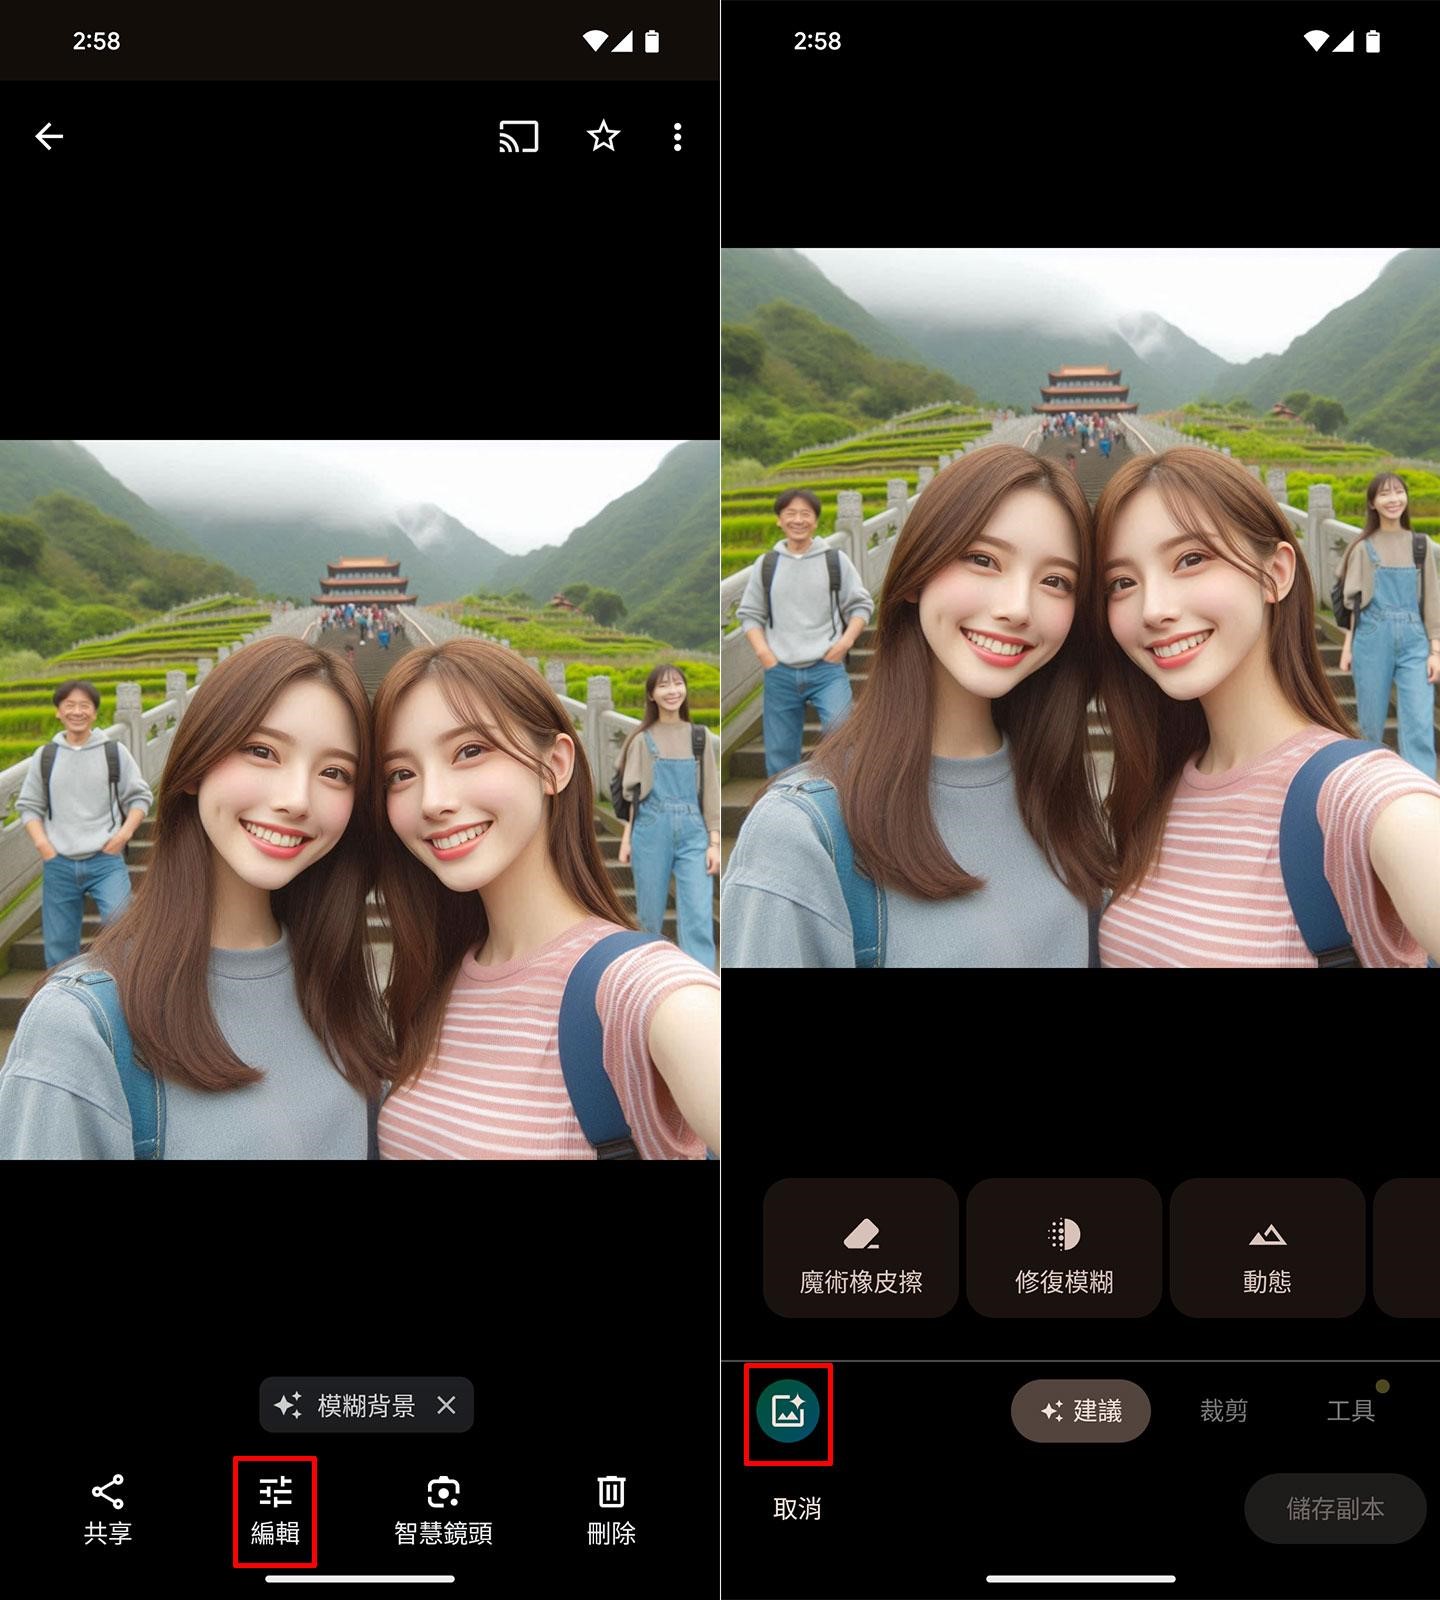 「術修圖」是深受 Pixel 用戶好評的照片編輯工具，啟動照片編輯器後可開啟該功能進行 AI 編輯模式。